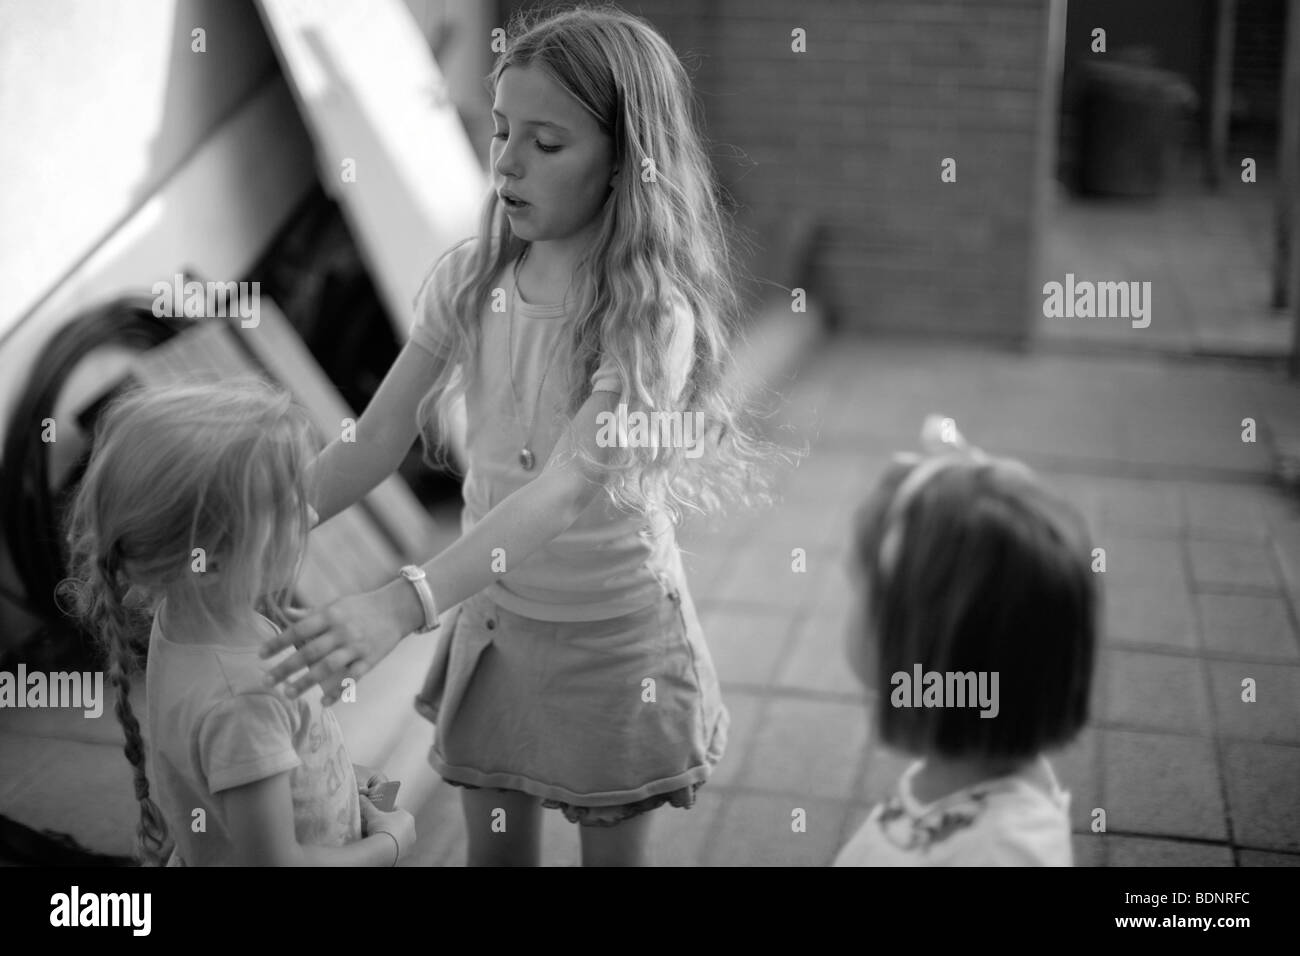 Immagine in bianco e nero di ragazze giocare all'aperto Foto Stock